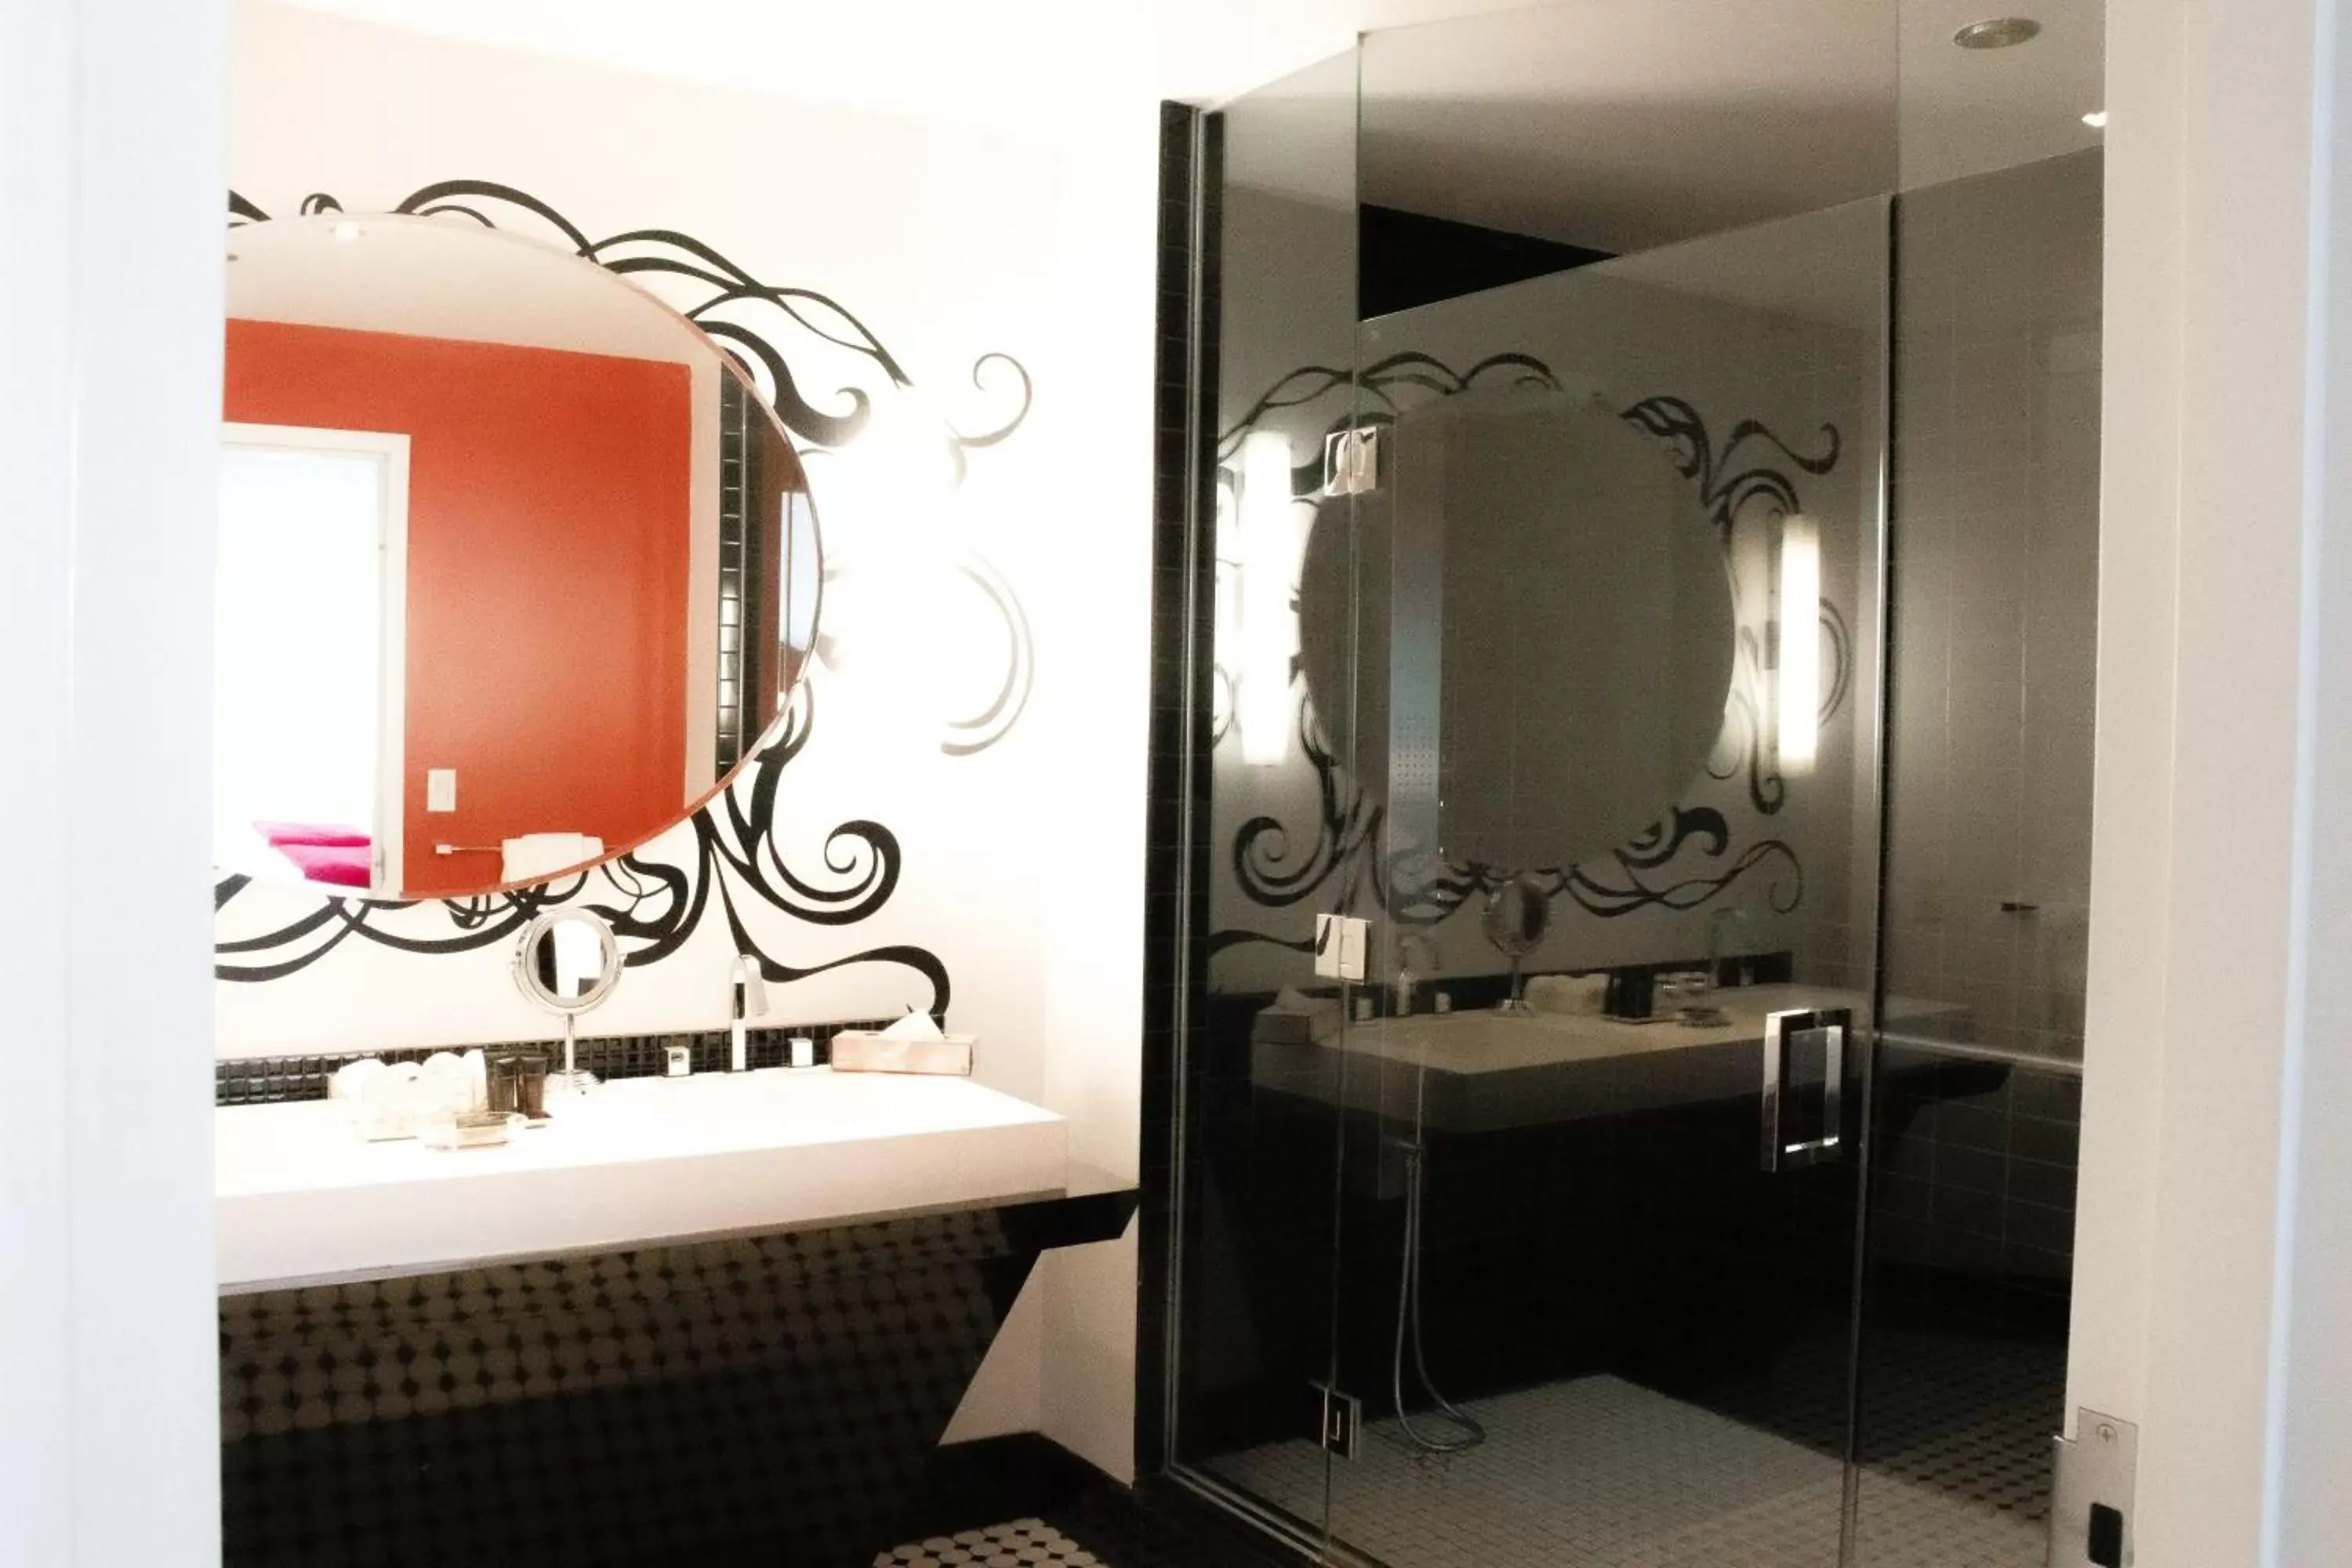 Shower, Bathroom in Hotel Chez Swann